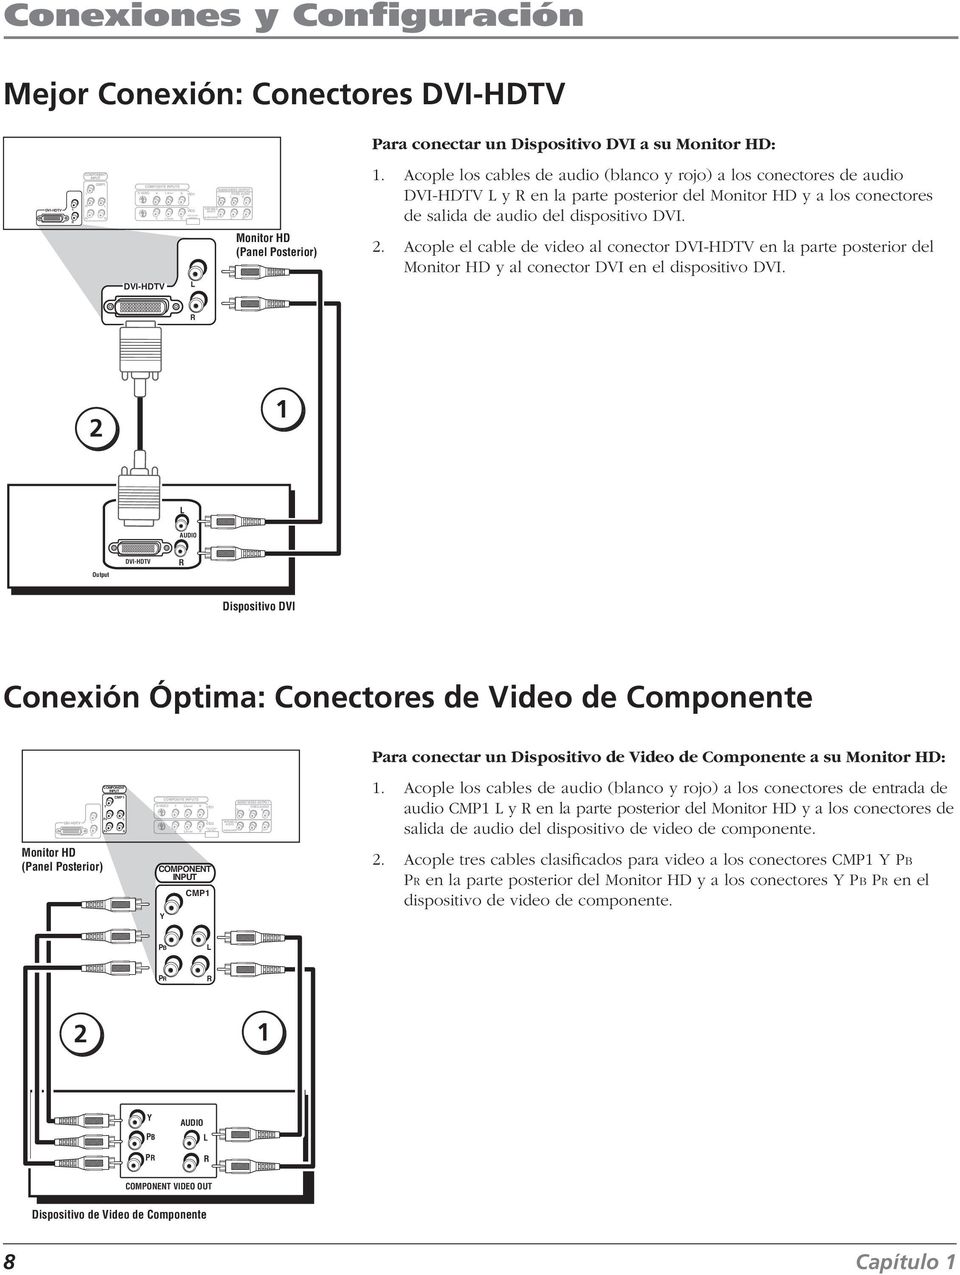 Acople los cables de audio (blanco y rojo) a los conectores de audio DVI-HDTV L y en la parte posterior del Monitor HD y a los conectores de salida de audio del dispositivo DVI.